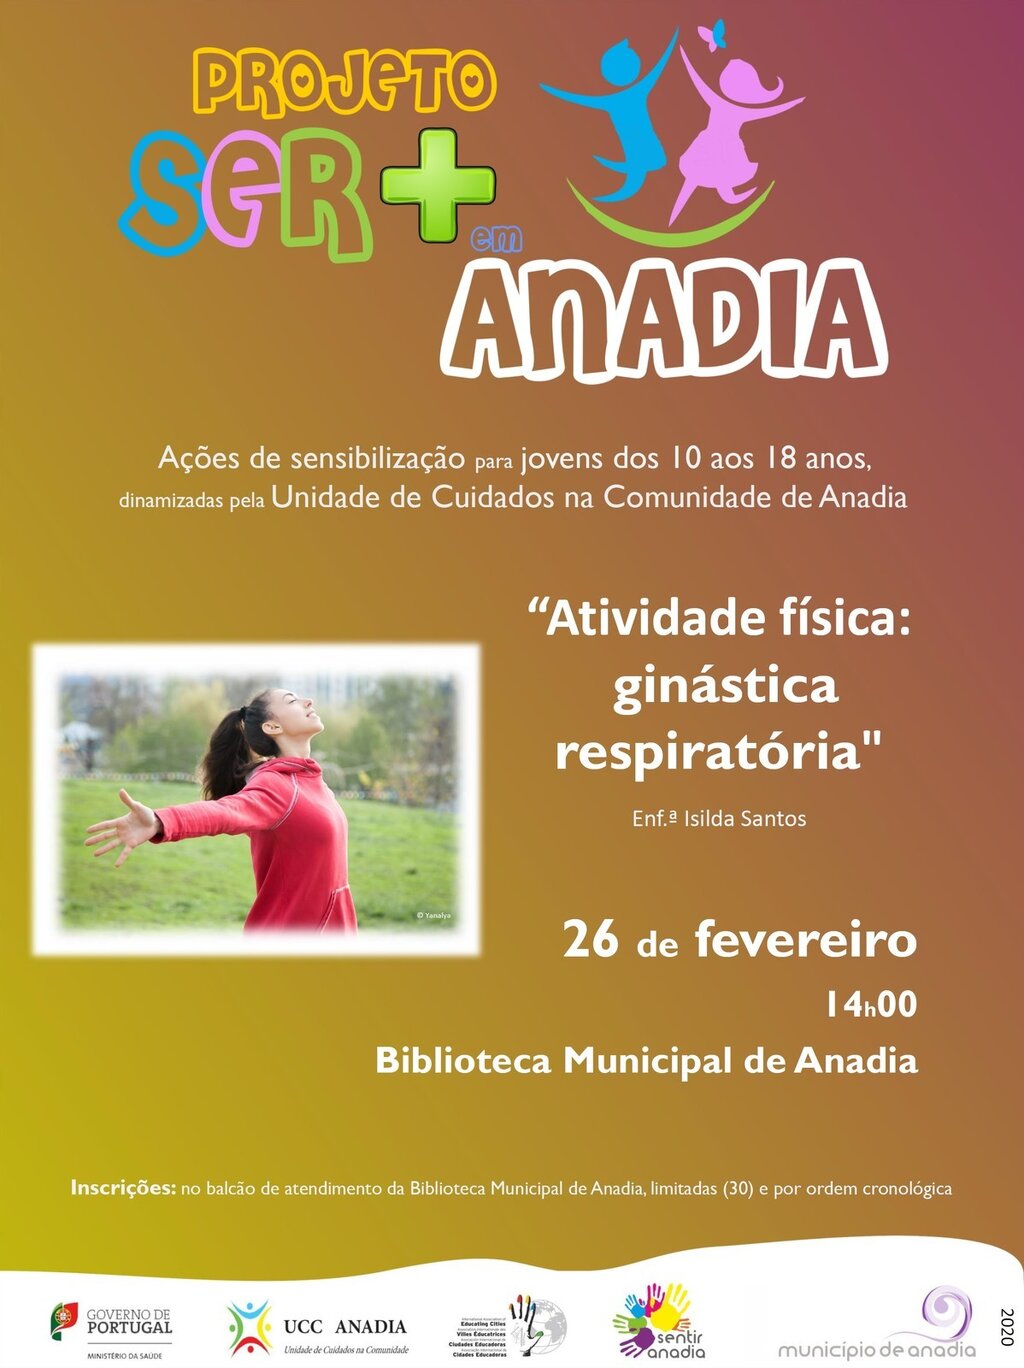  Projeto Ser + em Anadia  "Atividade física: Ginástica respiratória"